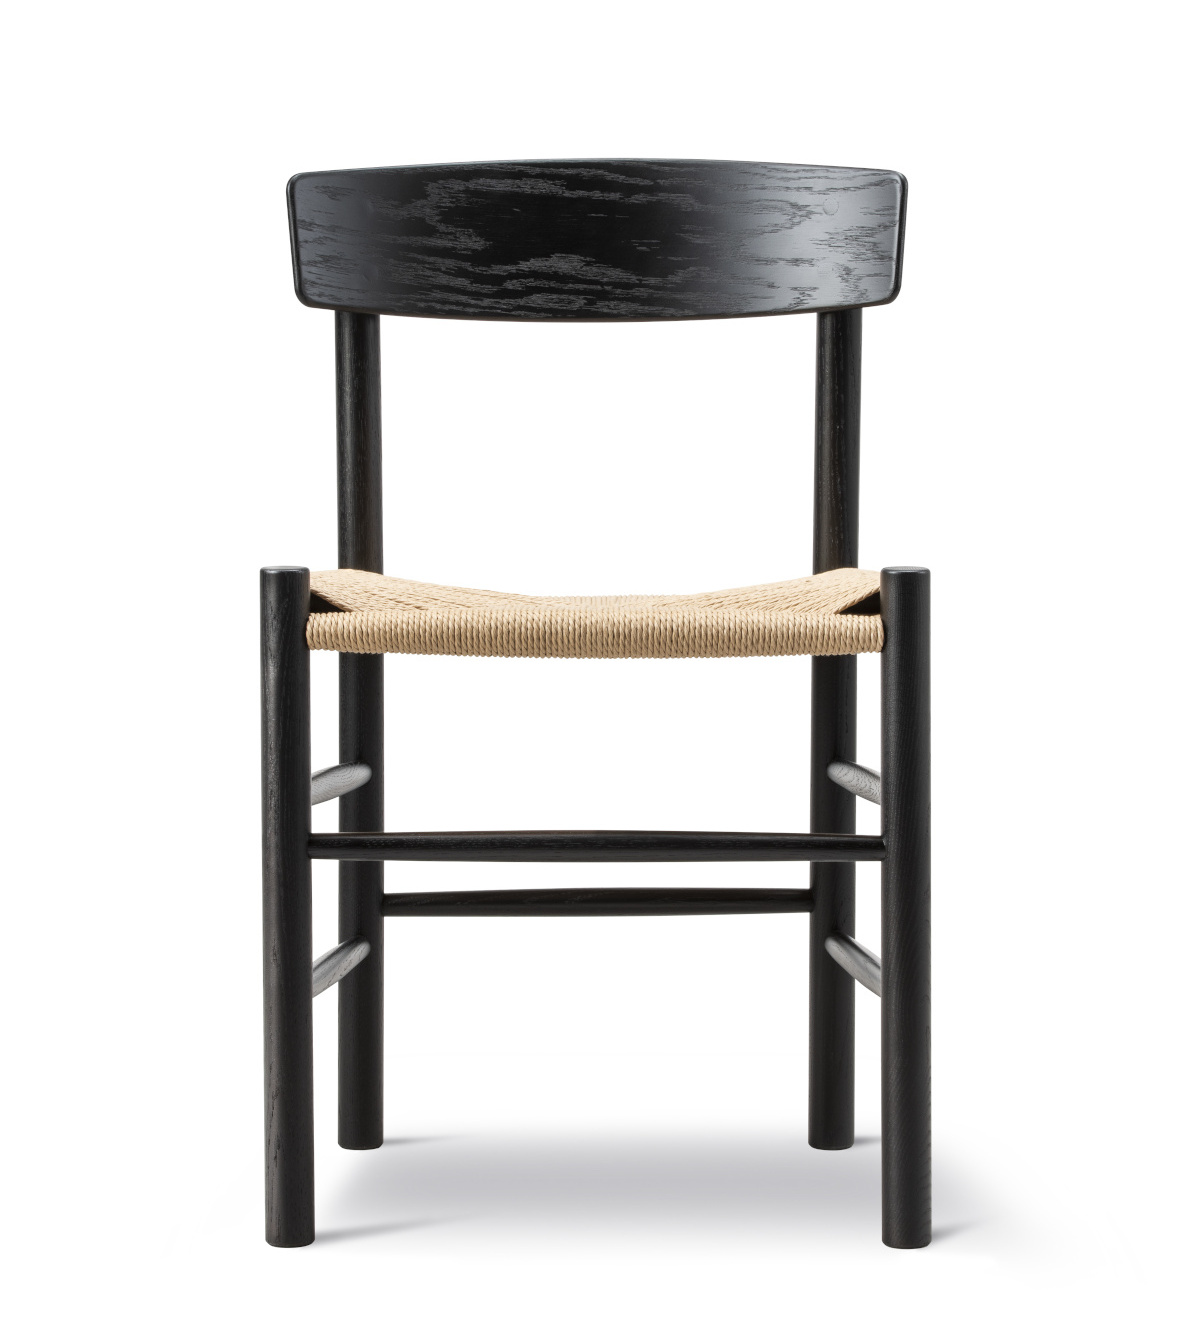 J39 Mogensen Stuhl, eiche schwarz lackiert / sitz schnurgefecht natur